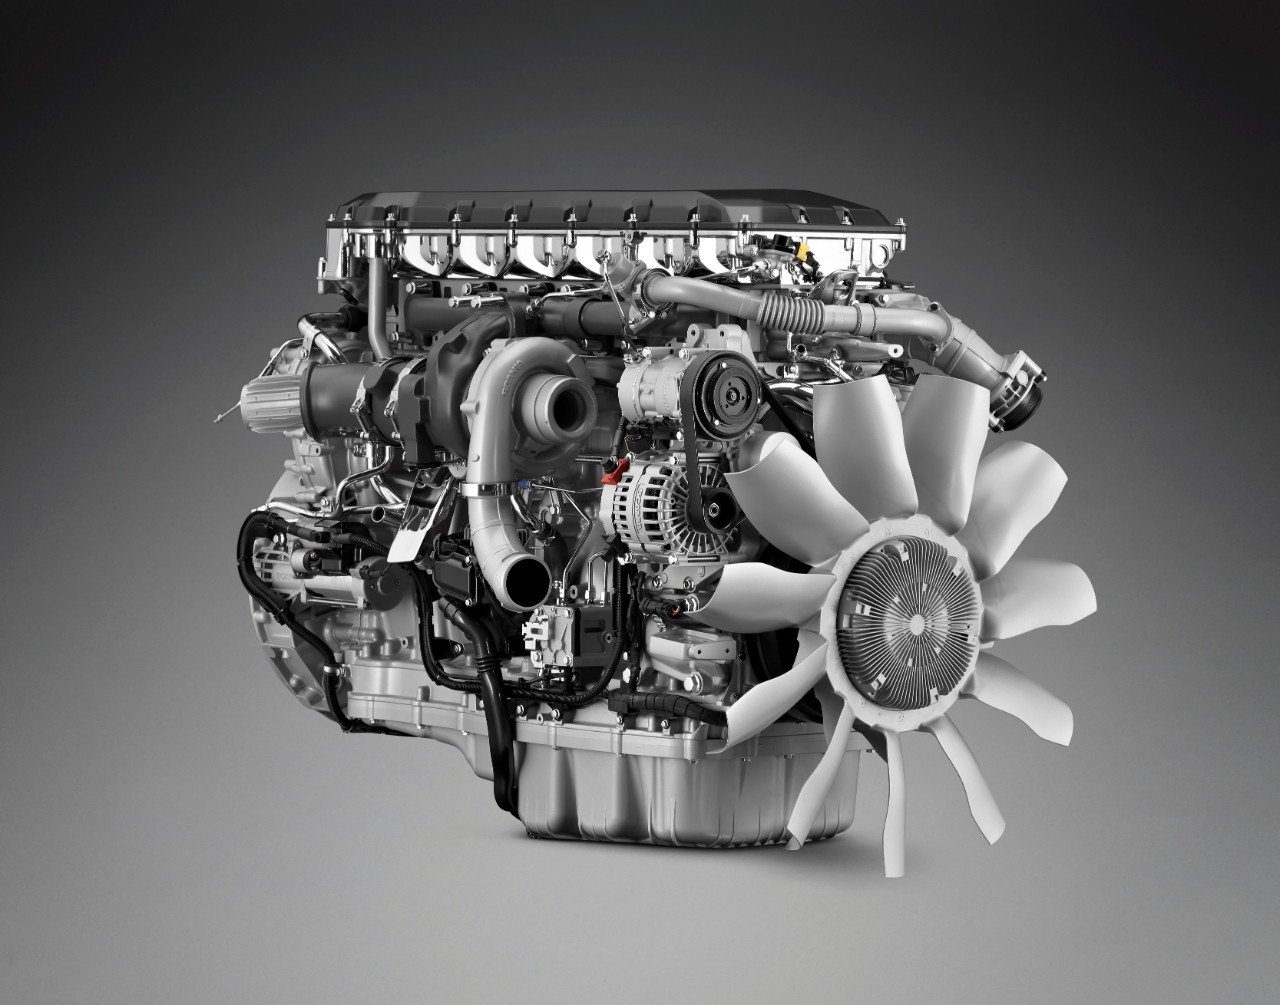 A Scania traz a tecnologia dos motores diesel para níveis sustentáveis